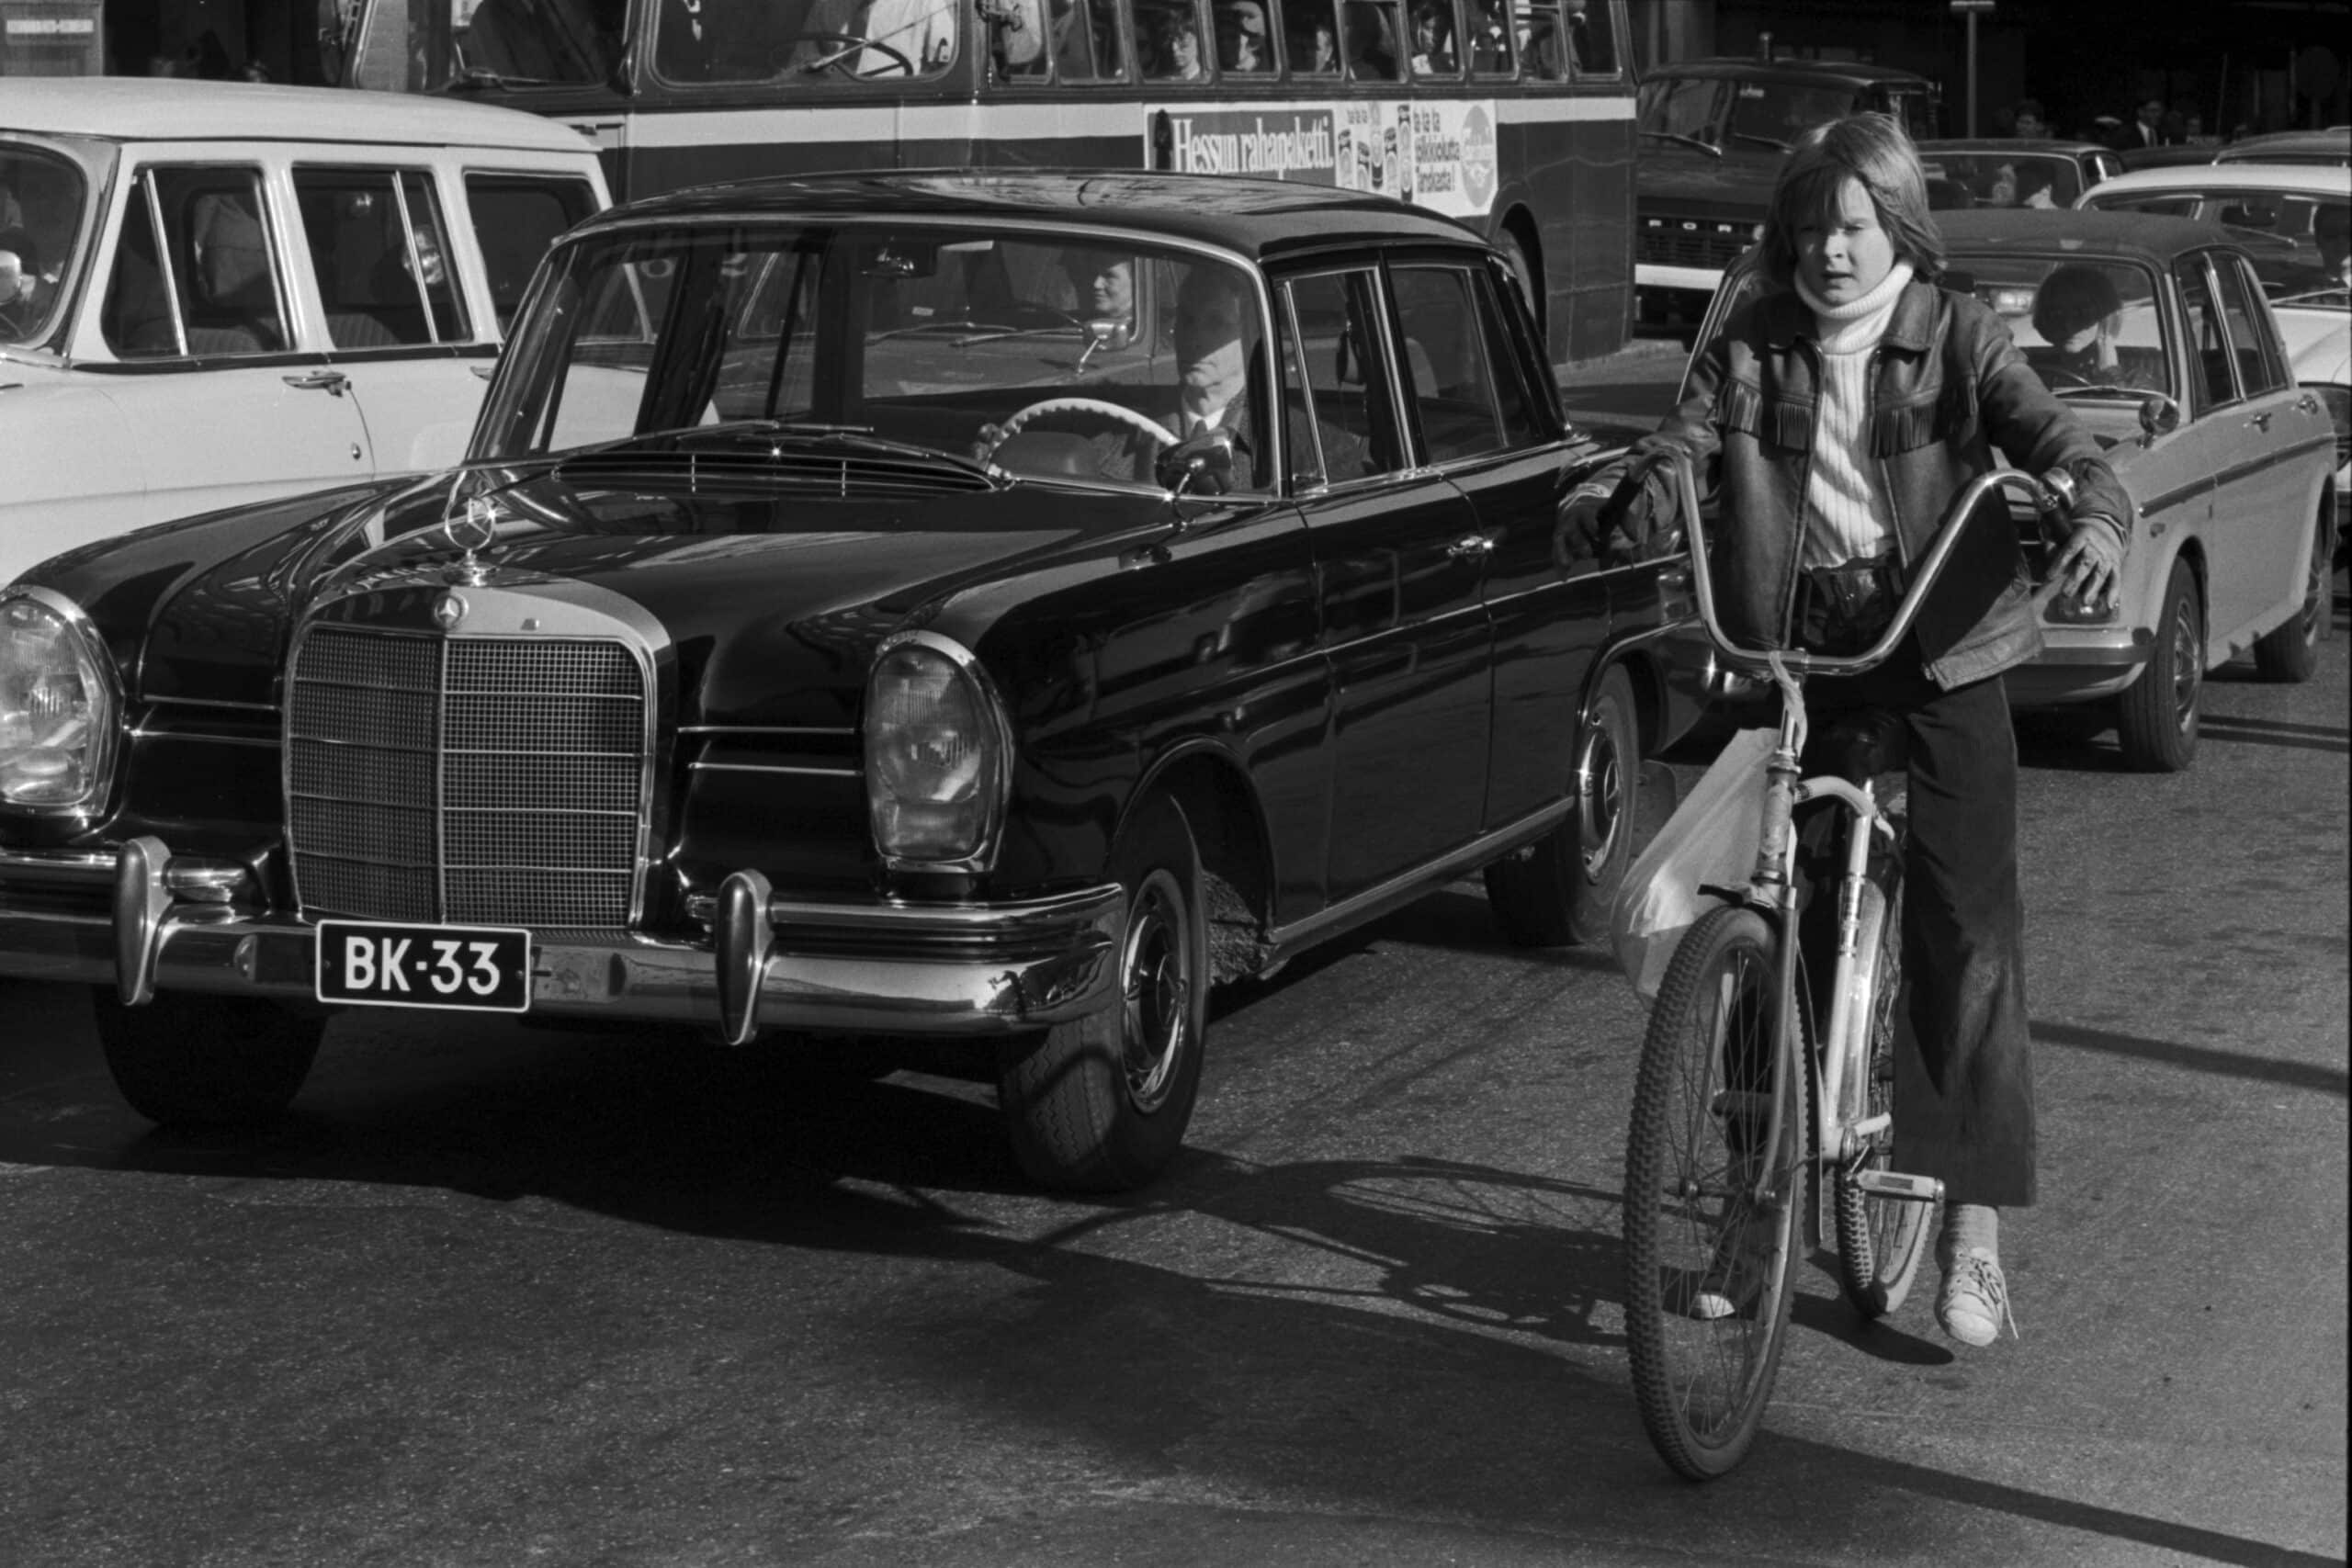 Kuva 4. Autoliikenteen vaarallisuuden takia erityisesti lasten pyöräilyyn alettiin suhtautua epäillen. Kuva vuodelta 1971 Helsingistä Fredrikinkadulta. Kuvalähde: kuvaaja Simo Rista, Helsingin kaupunginmuseo.